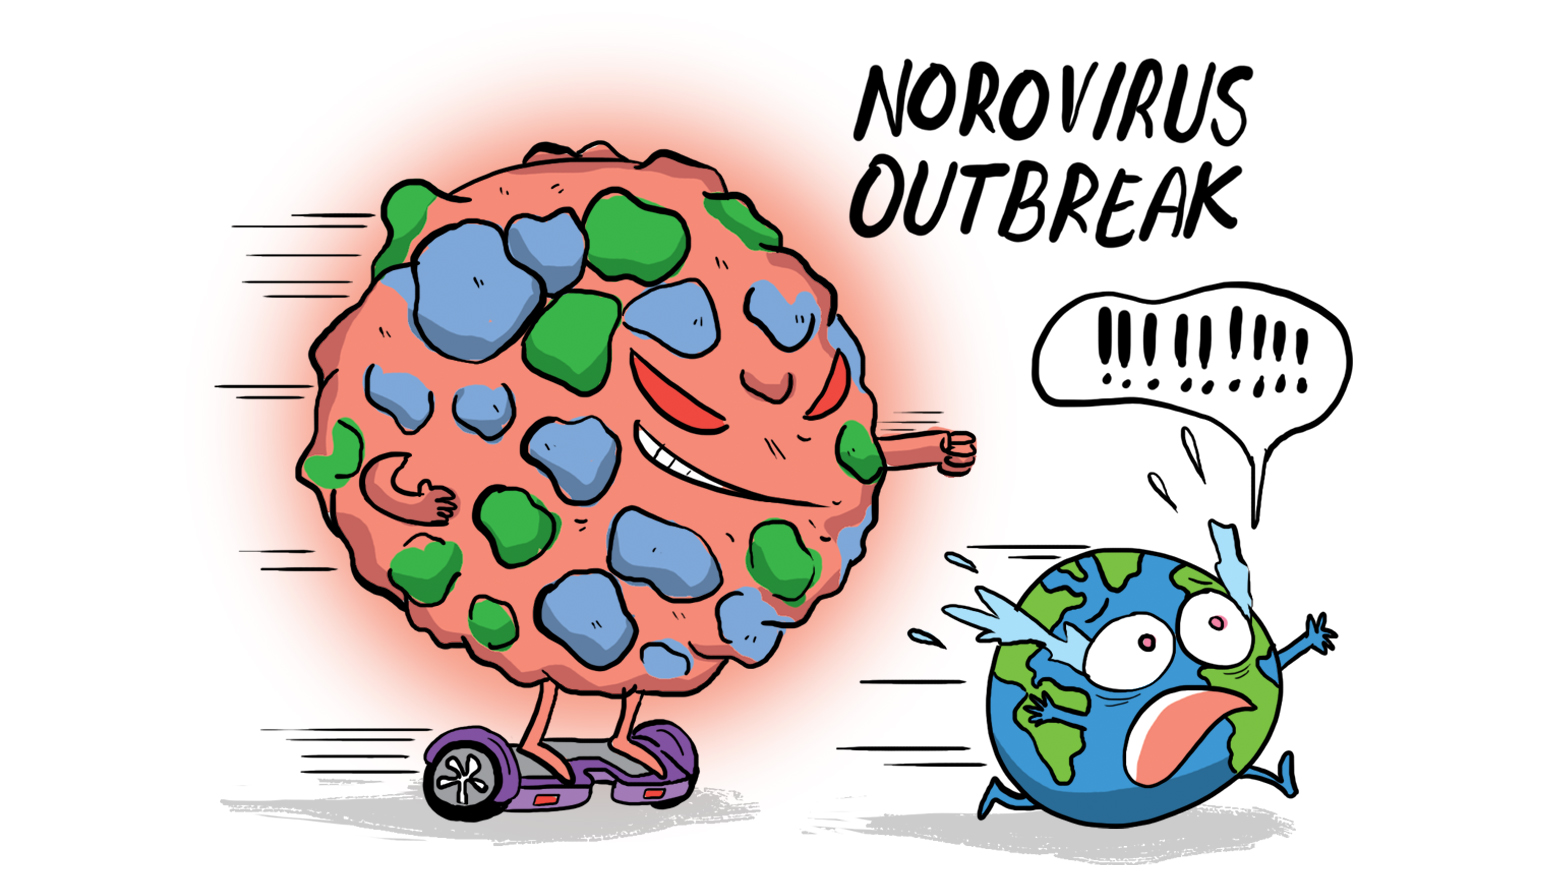 Novovirus outbreak